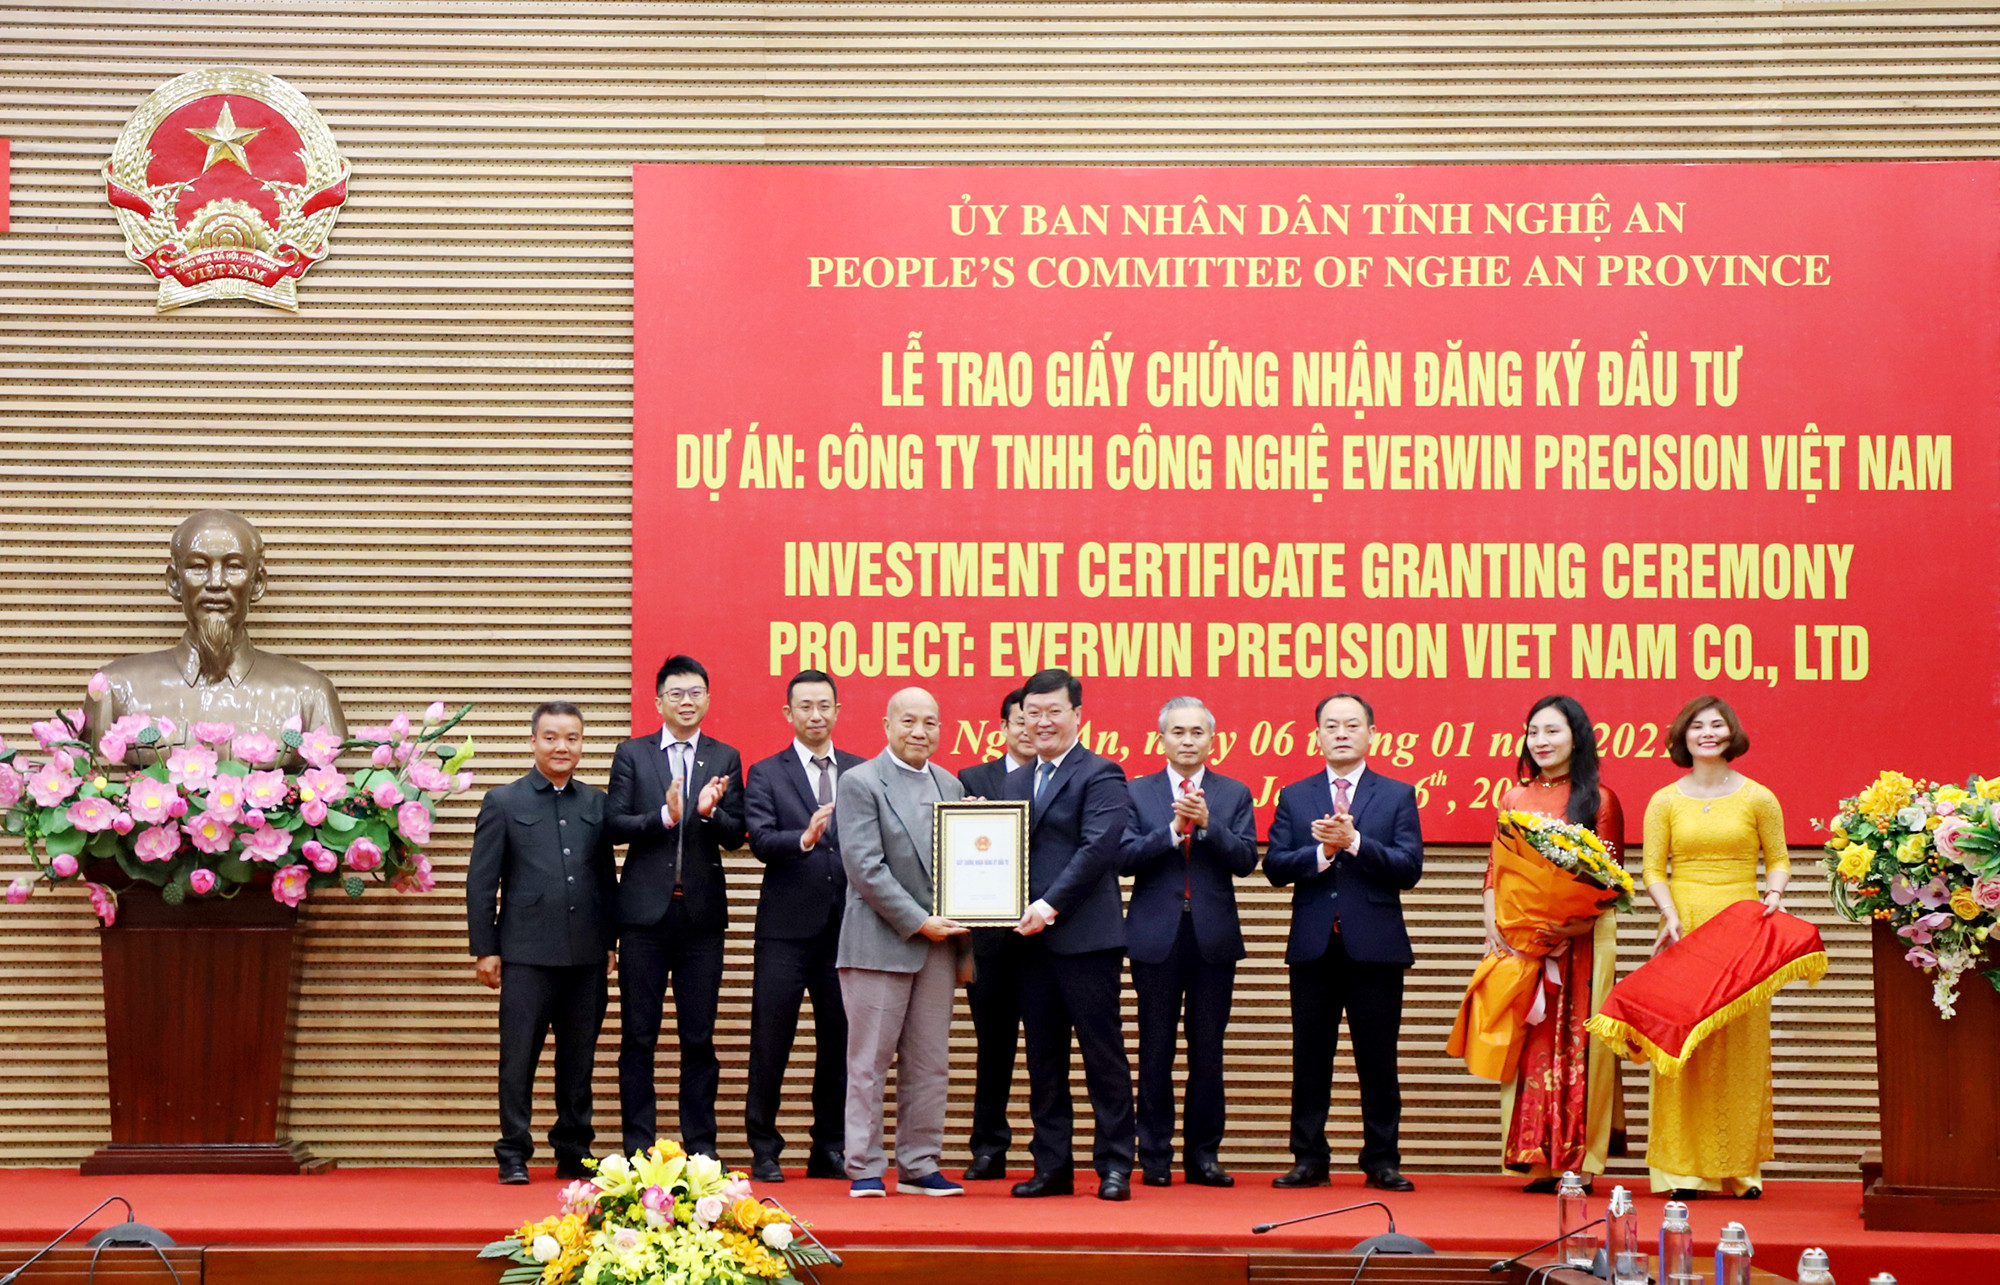 Đồng chí Nguyễn Đức Trung - Chủ tịch UBND tỉnh trao Giấy chứng nhận đăng ký đầu tư cho nhà đầu tư. Ảnh: Phạm Bằng